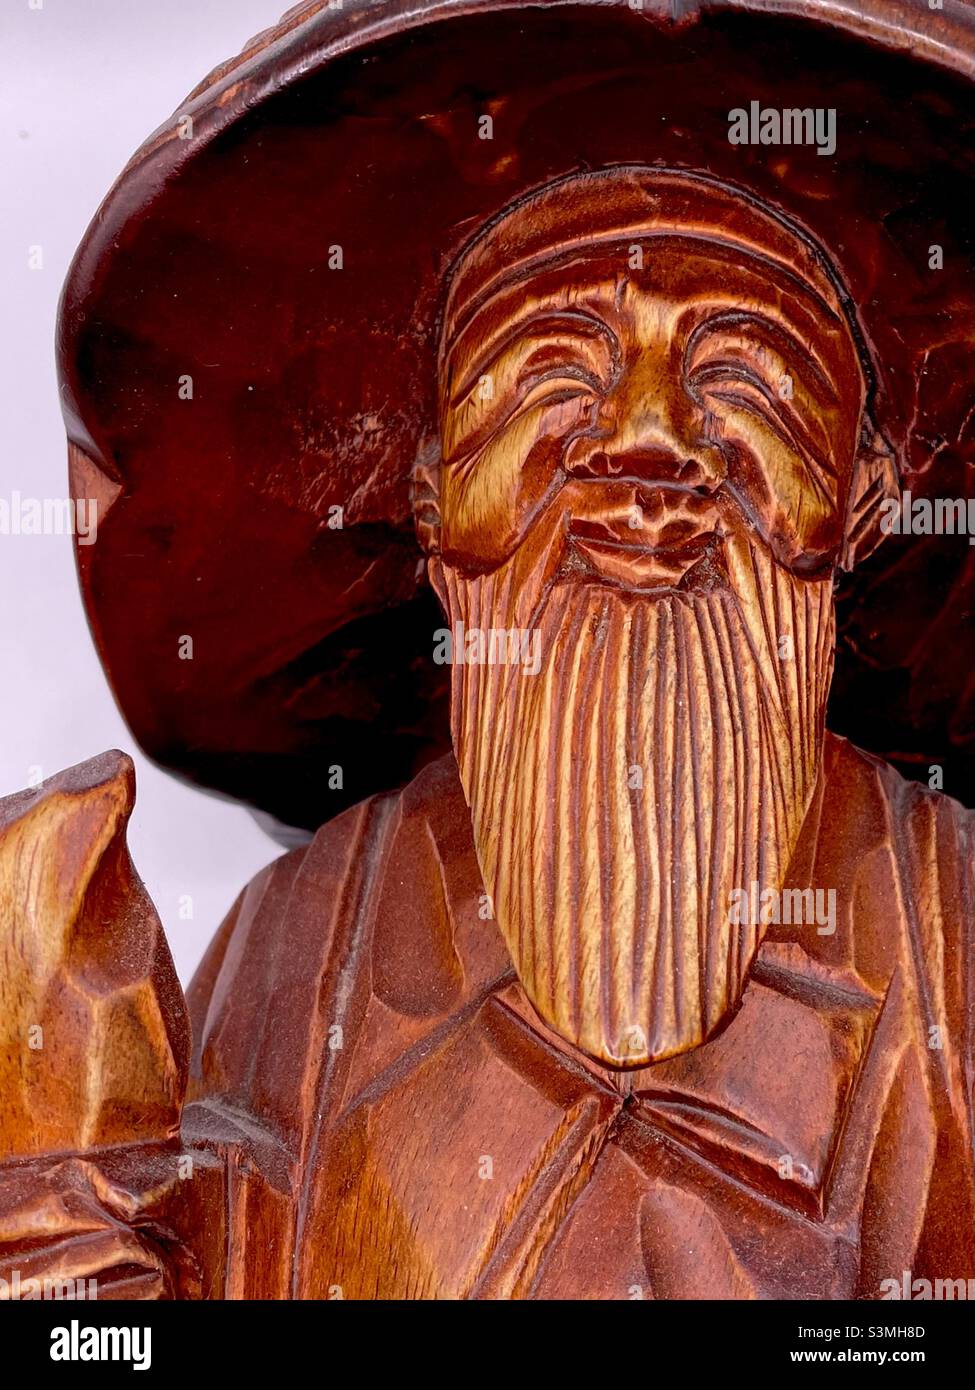 Aus Holz geschnitzte koreanische Statue eines Reisenden alten Mannes oder Mönchs mit Bart, Hut und Lächeln Stockfoto